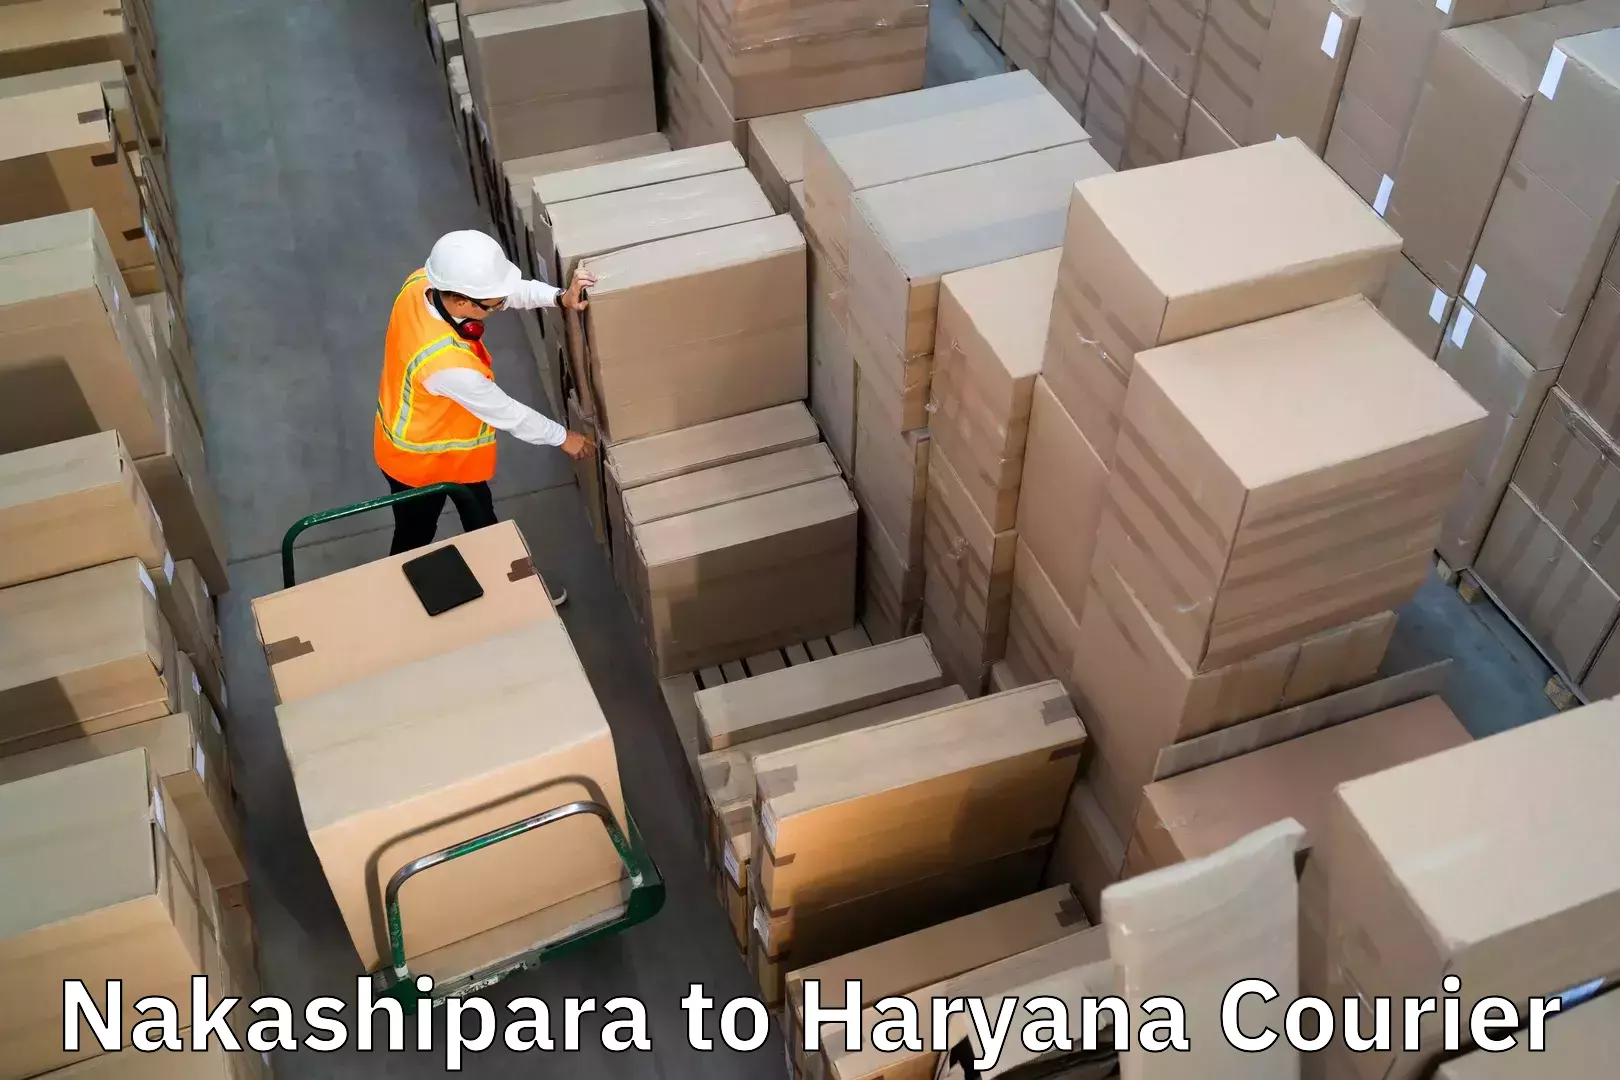 Luggage delivery optimization Nakashipara to NIT Kurukshetra